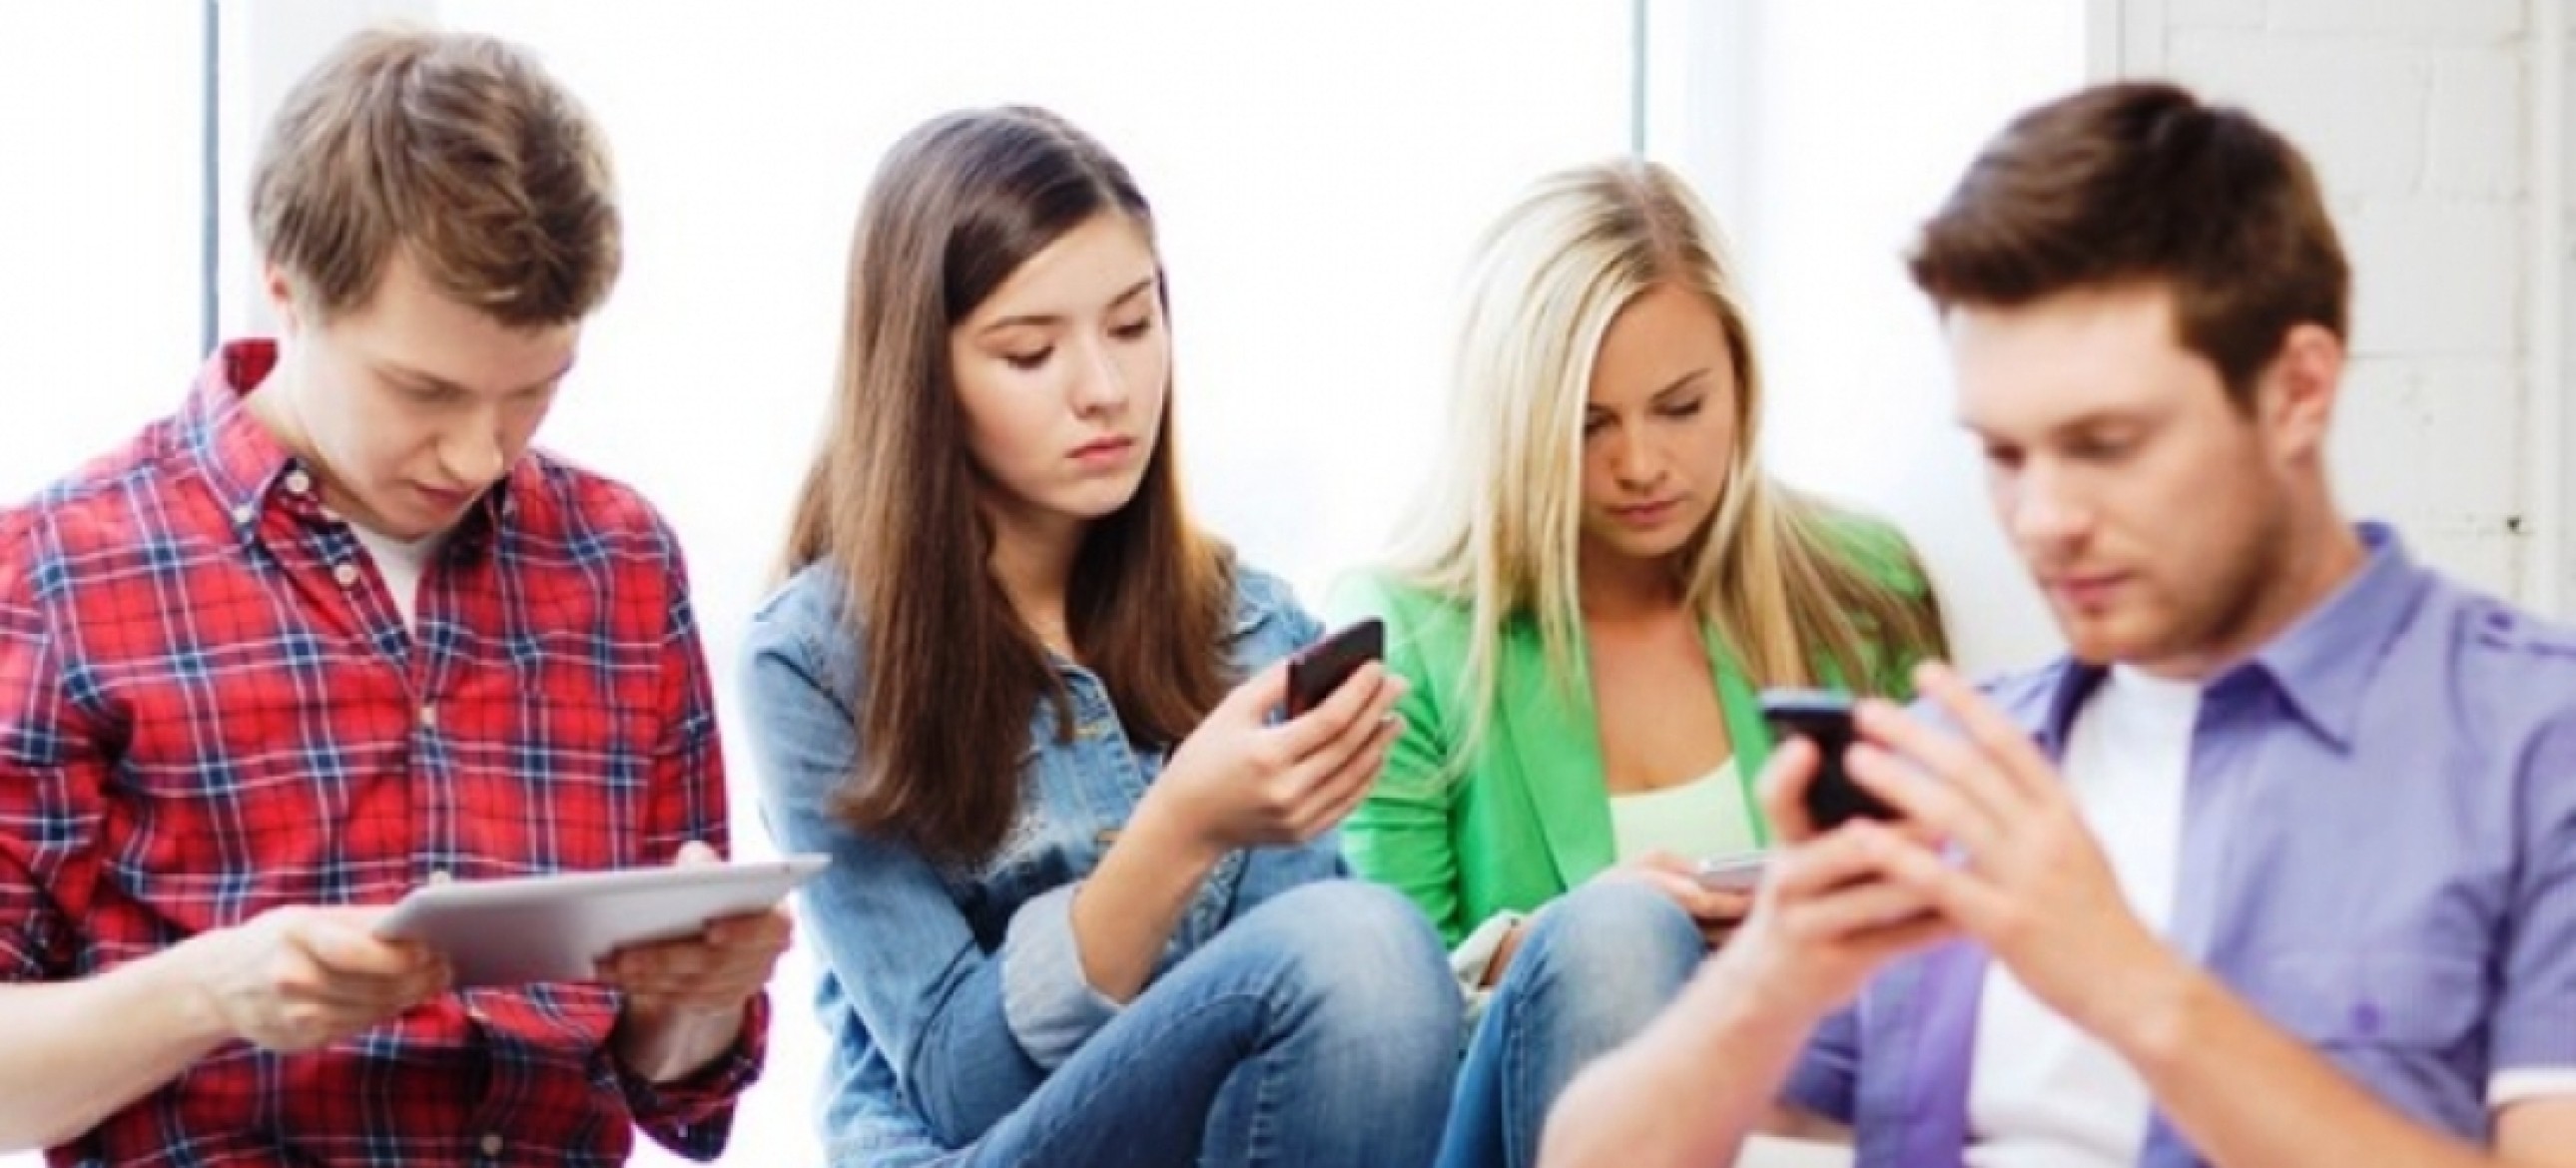 Зависимость от маркетплейсов. Подросток с телефоном. Молодежь с гаджетами. Зависимость людей от гаджетов. Подросток и интернет зависимость.